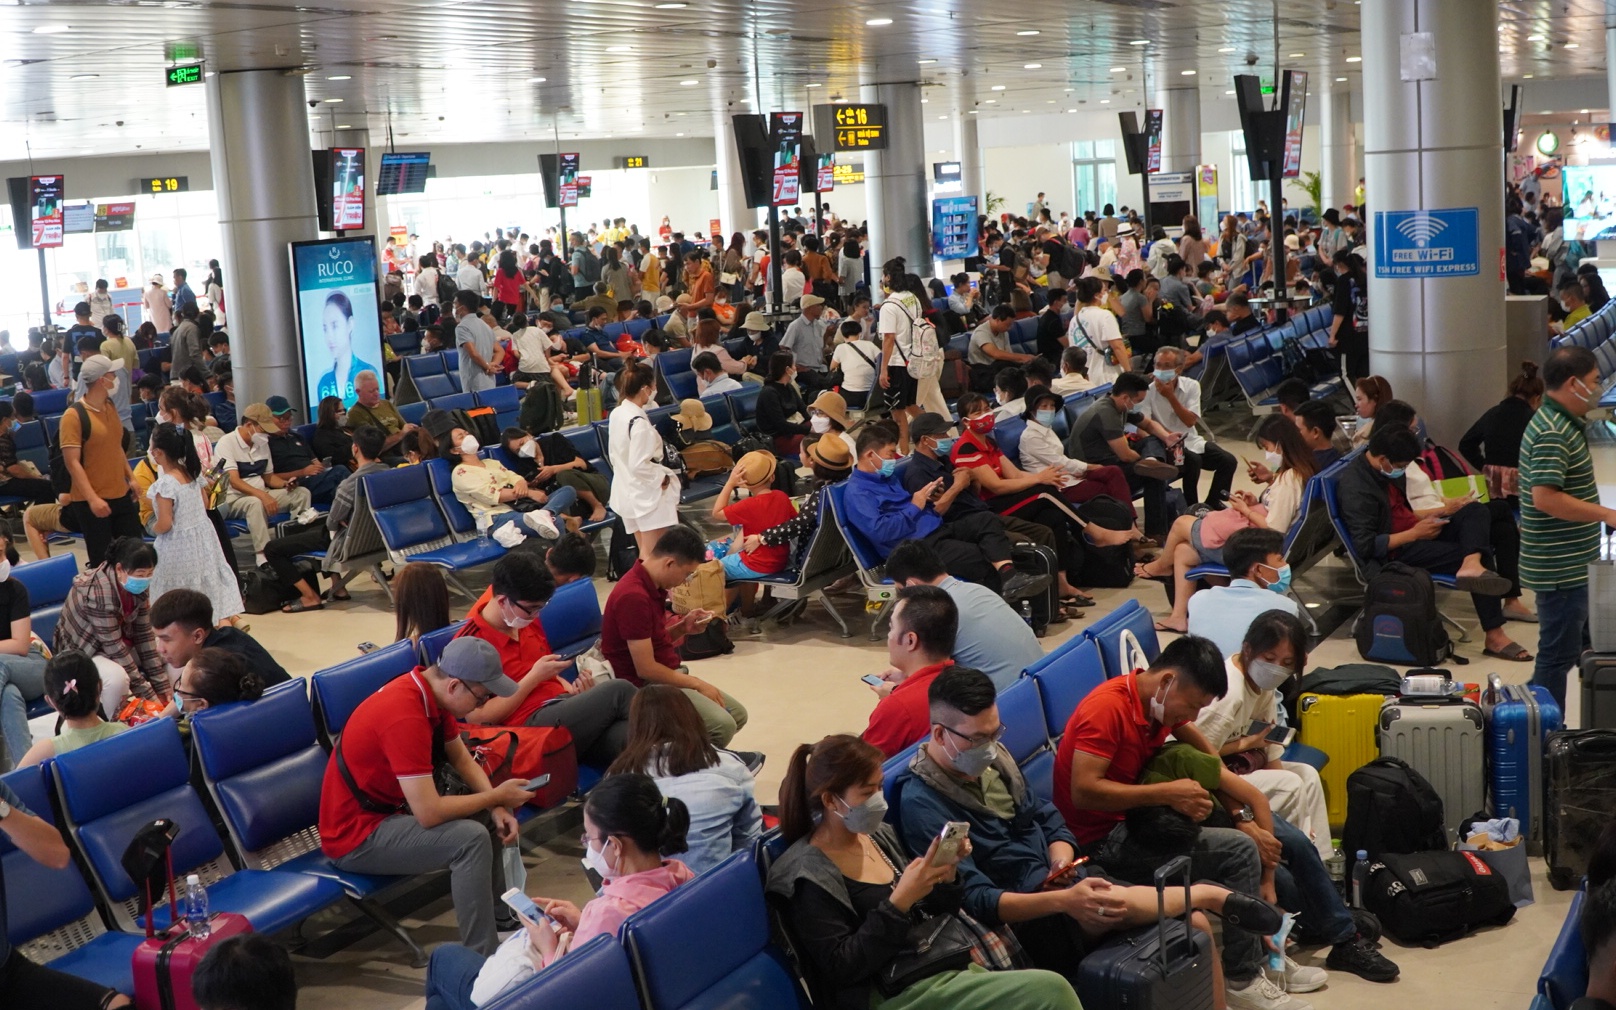 Thu hồi hơn 14,7ha đất quốc phòng để kịp khởi công nhà ga T3 sân bay Tân Sơn Nhất trong tháng 12